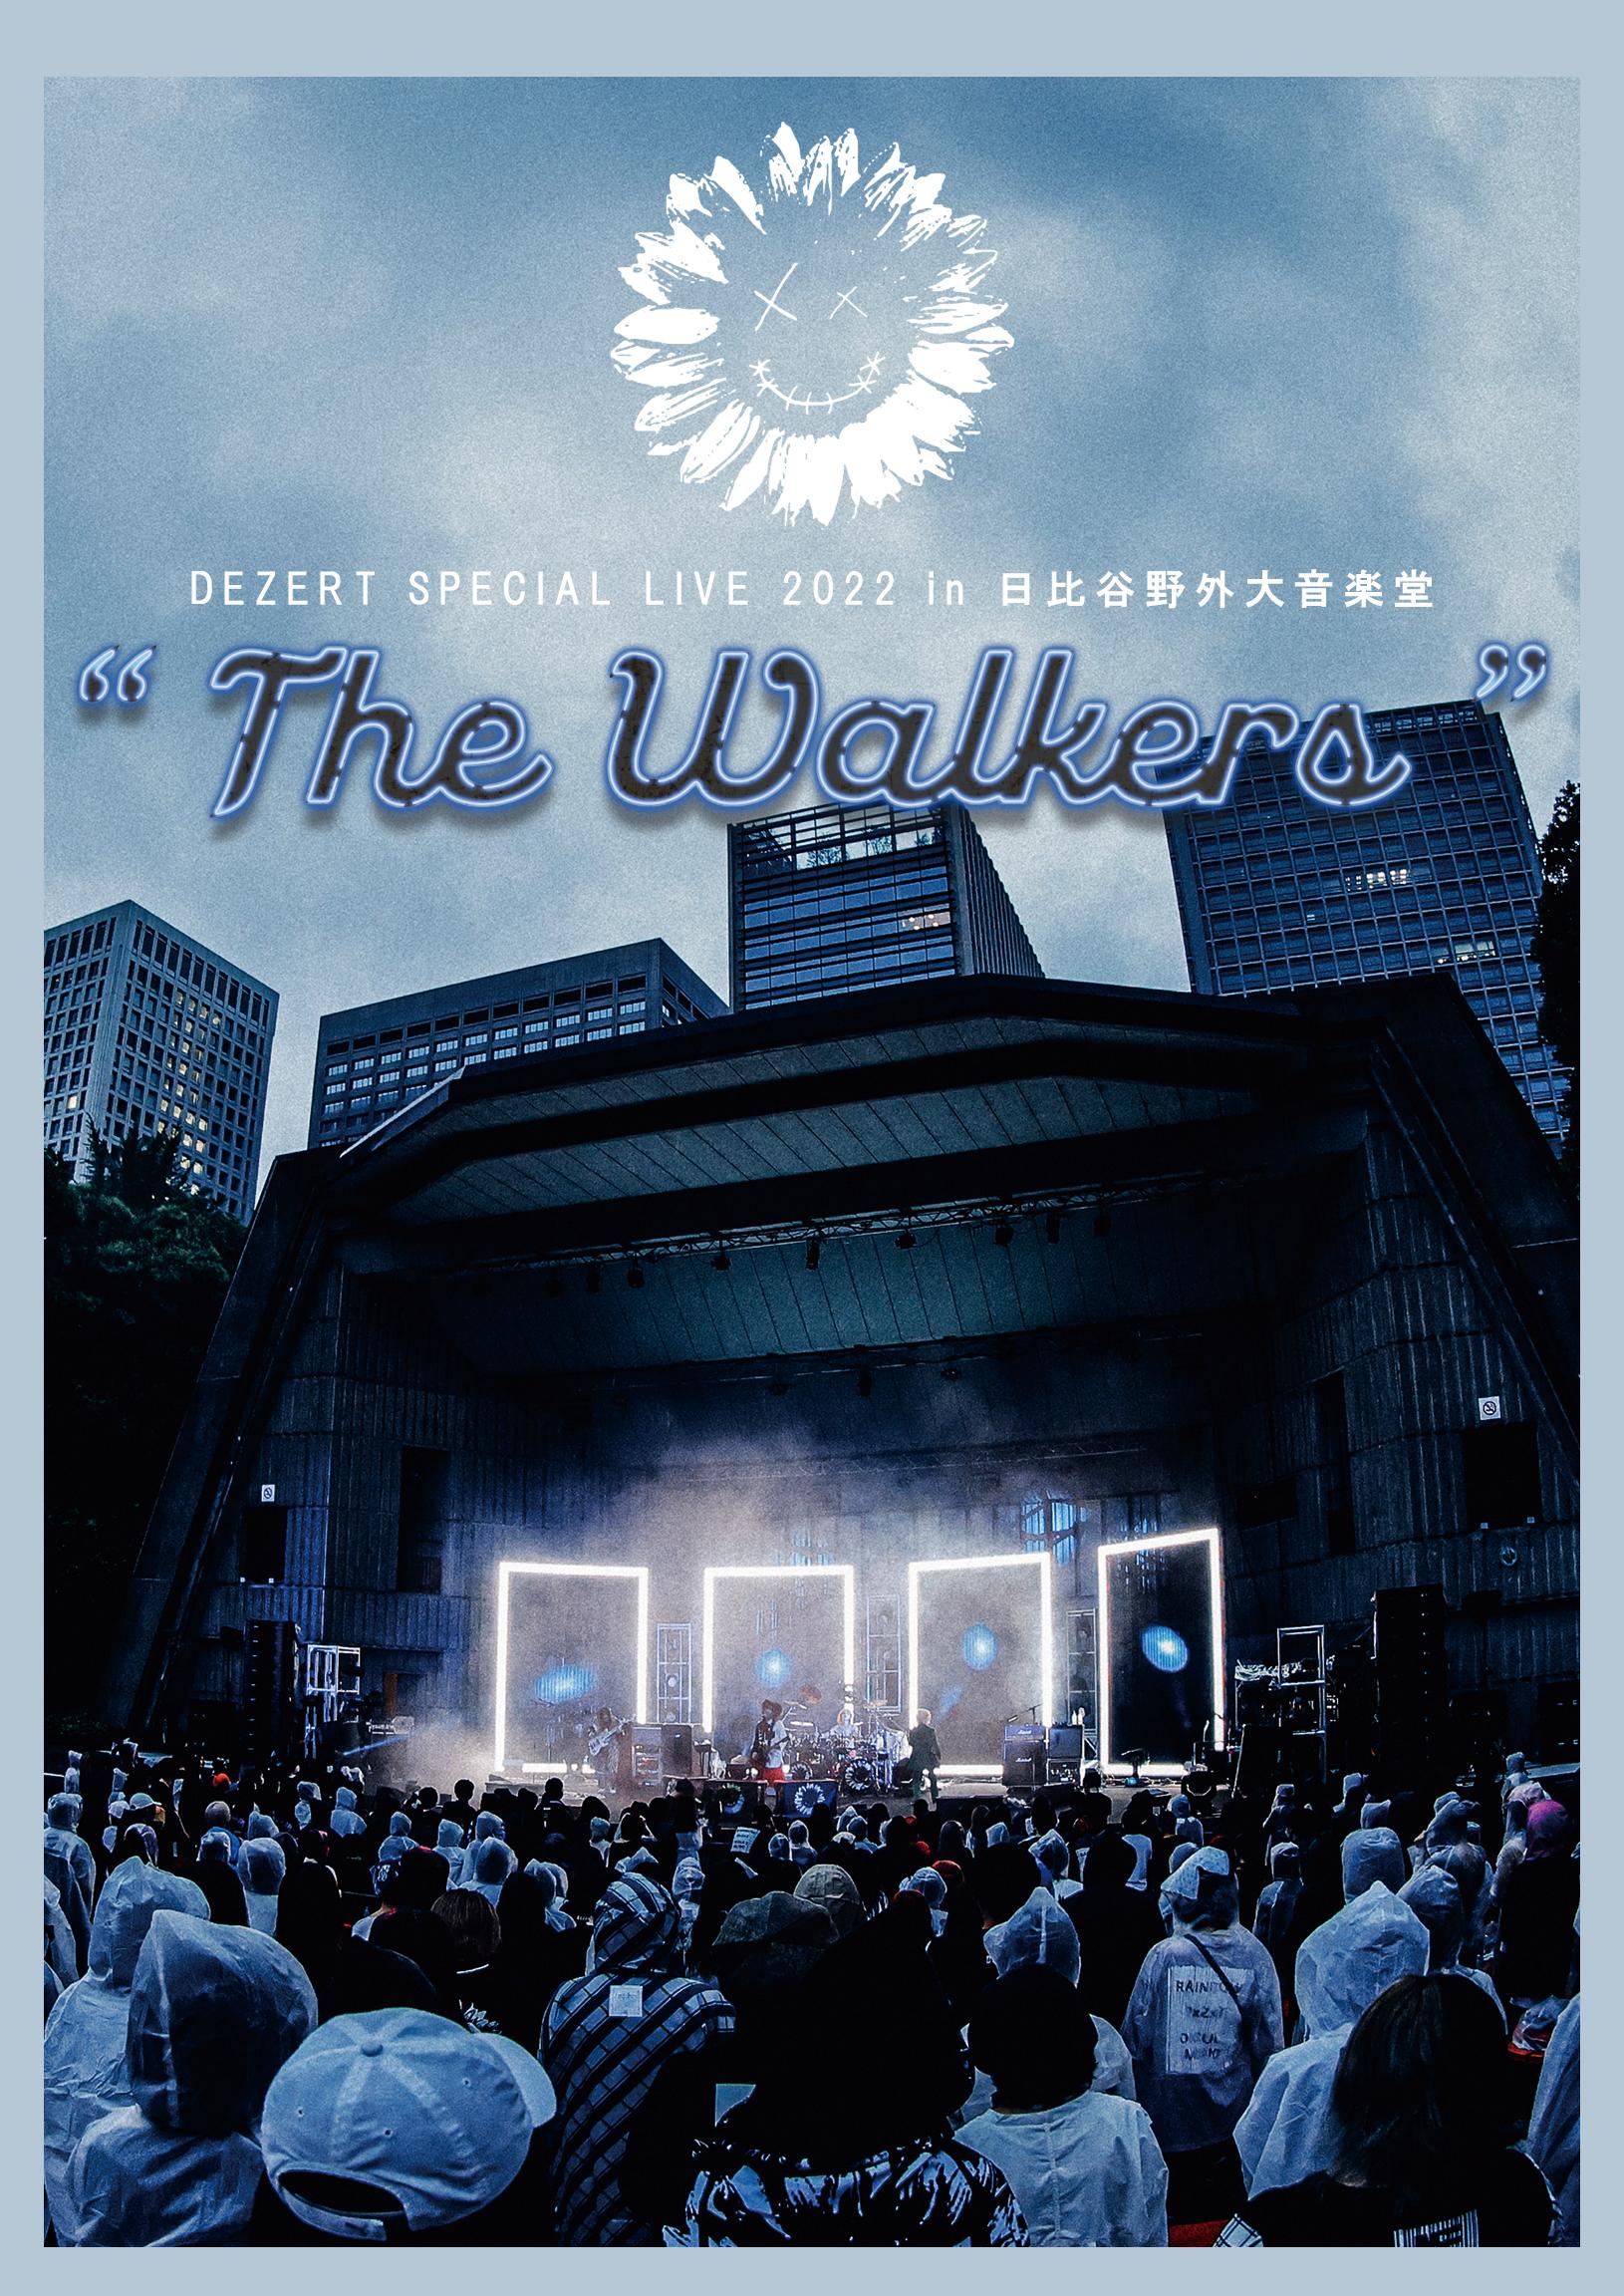 DEZERT SPECIAL LIVE 2022 in 日比谷野外大音楽堂 “The Walkers”